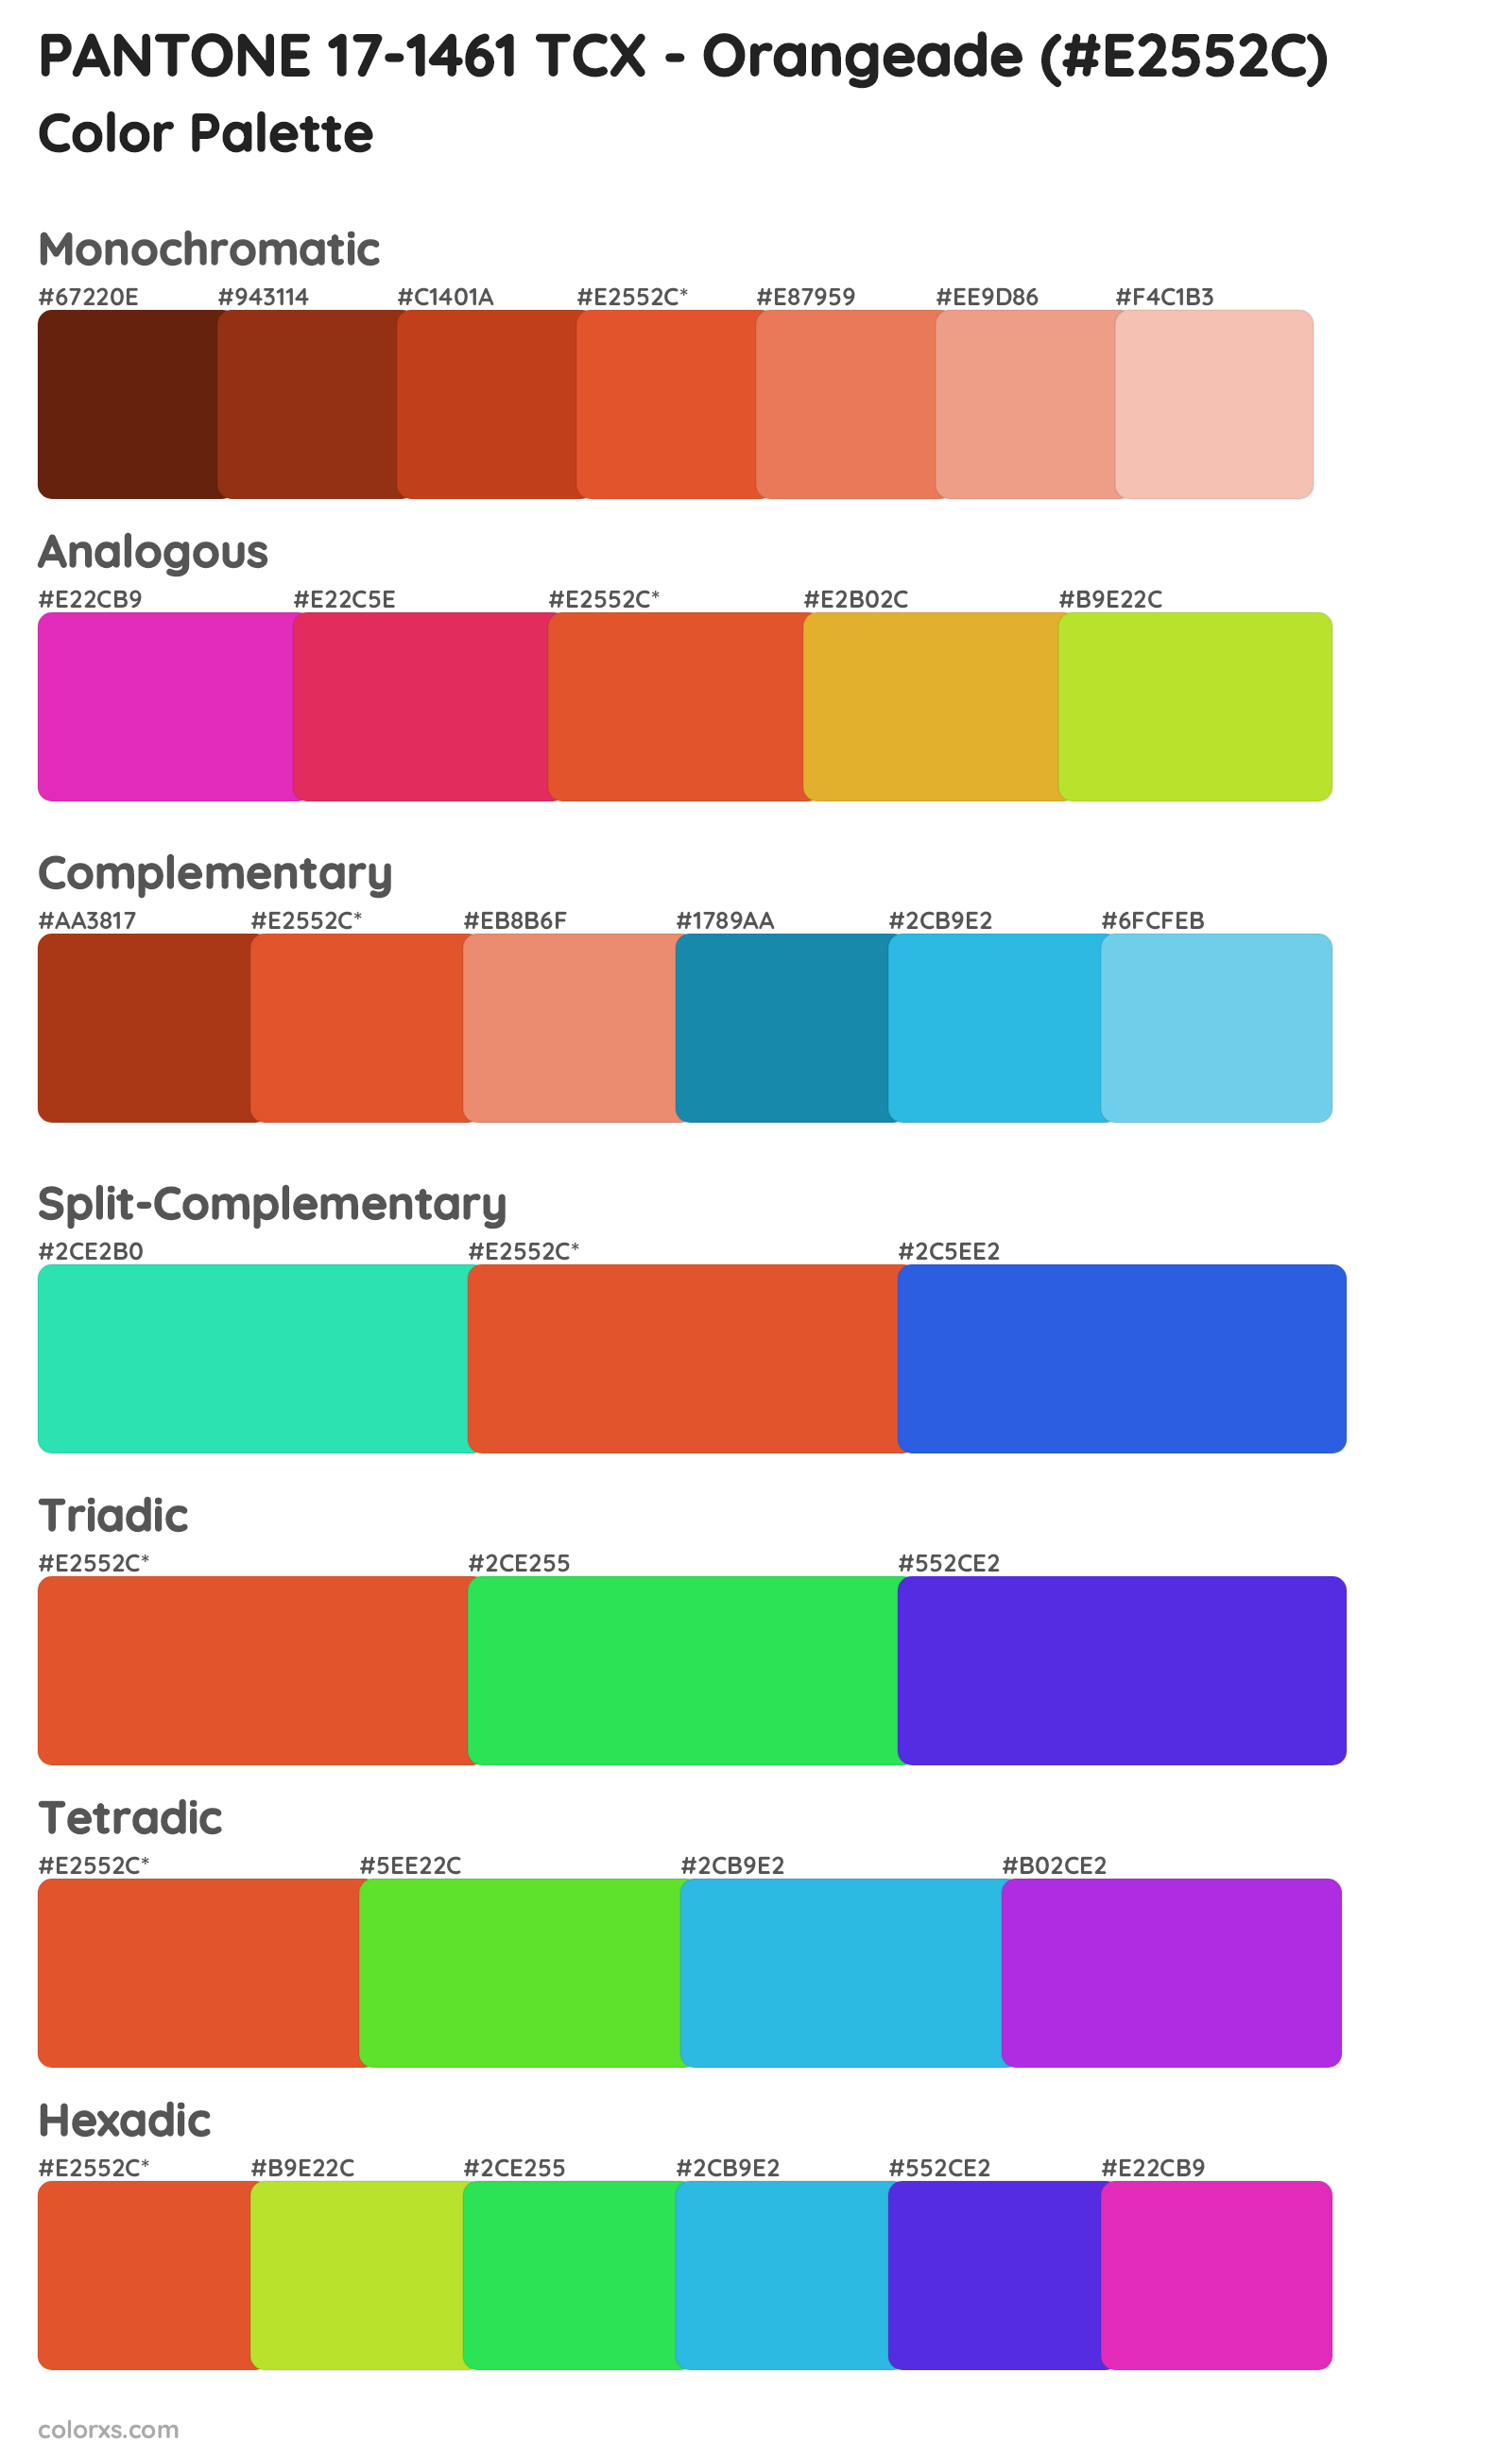 PANTONE 17-1461 TCX - Orangeade Color Scheme Palettes